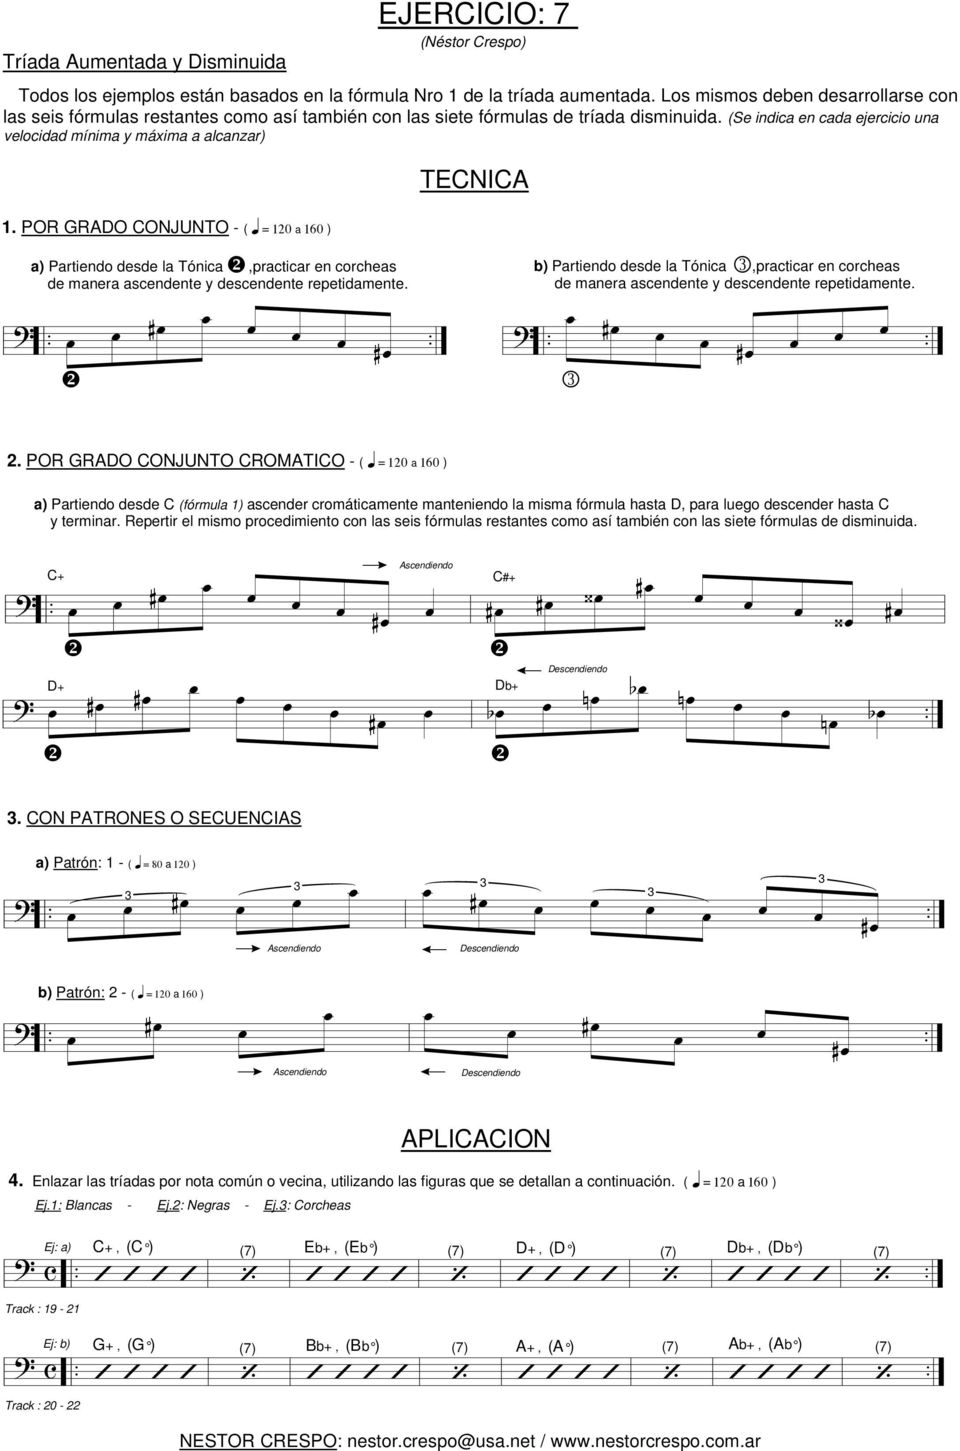 # # a) Partiendo desde la Tónica,practicar en corcheas de manera ascendente y descendente repetidamente b) Partiendo desde la Tónica,practicar en corcheas de manera ascendente y descendente